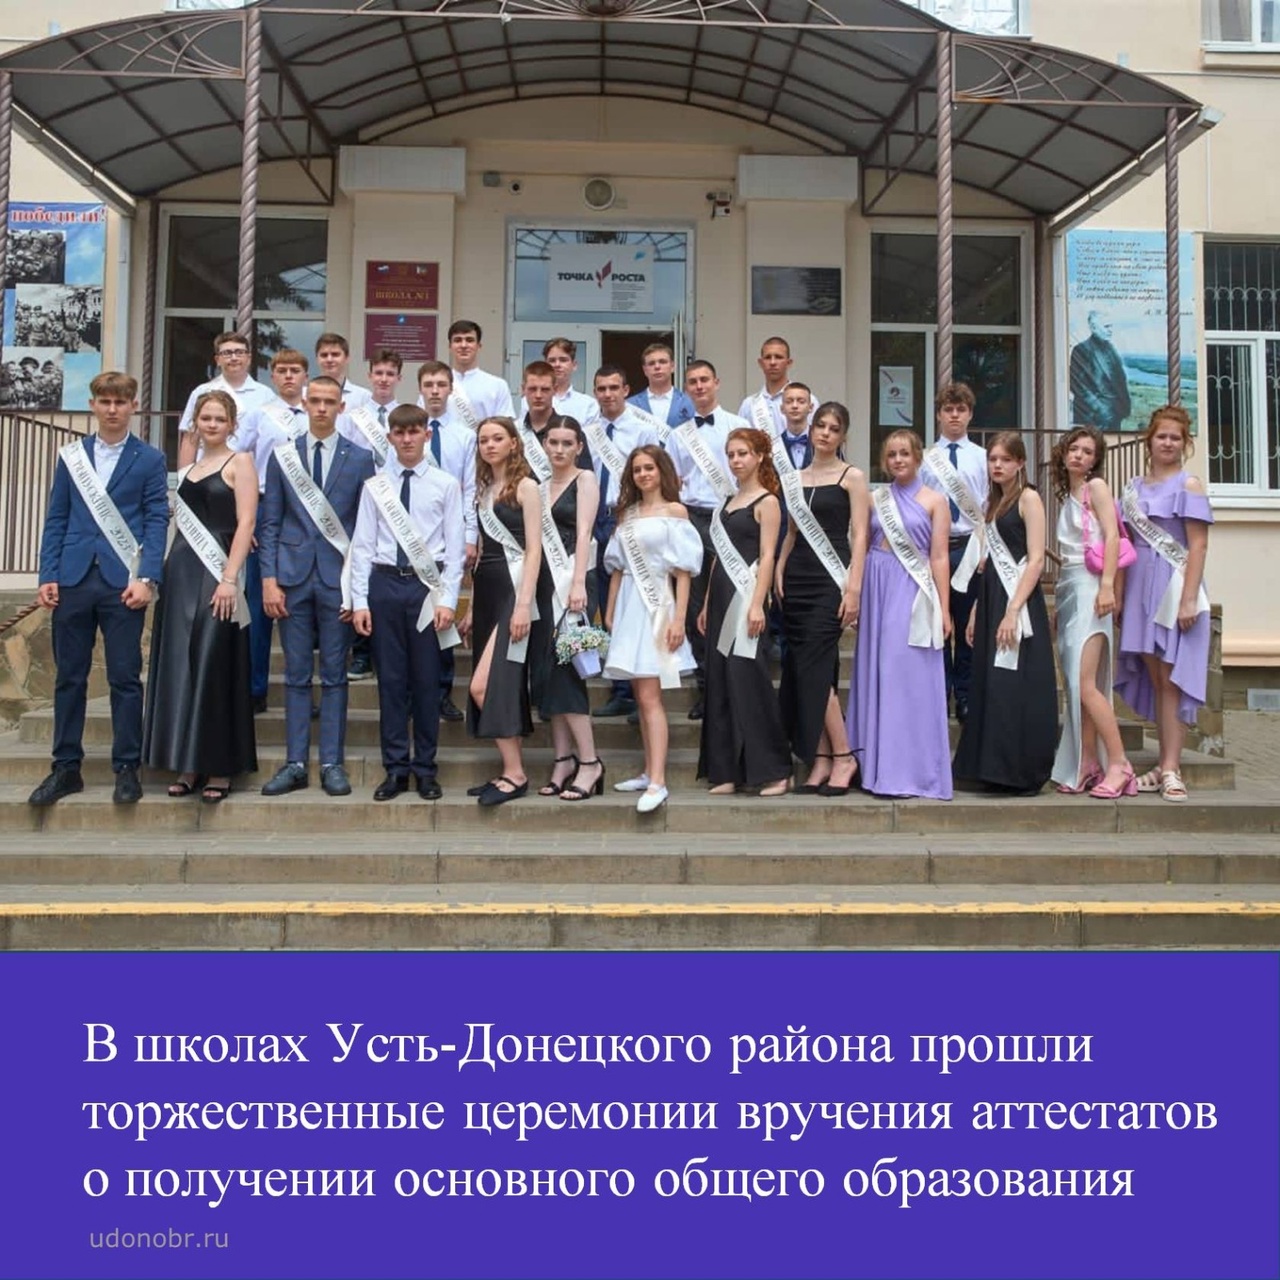 В школах Усть-Донецкого района прошли торжественные церемонии вручения аттестатов о получении основного общего образования. Для выпус